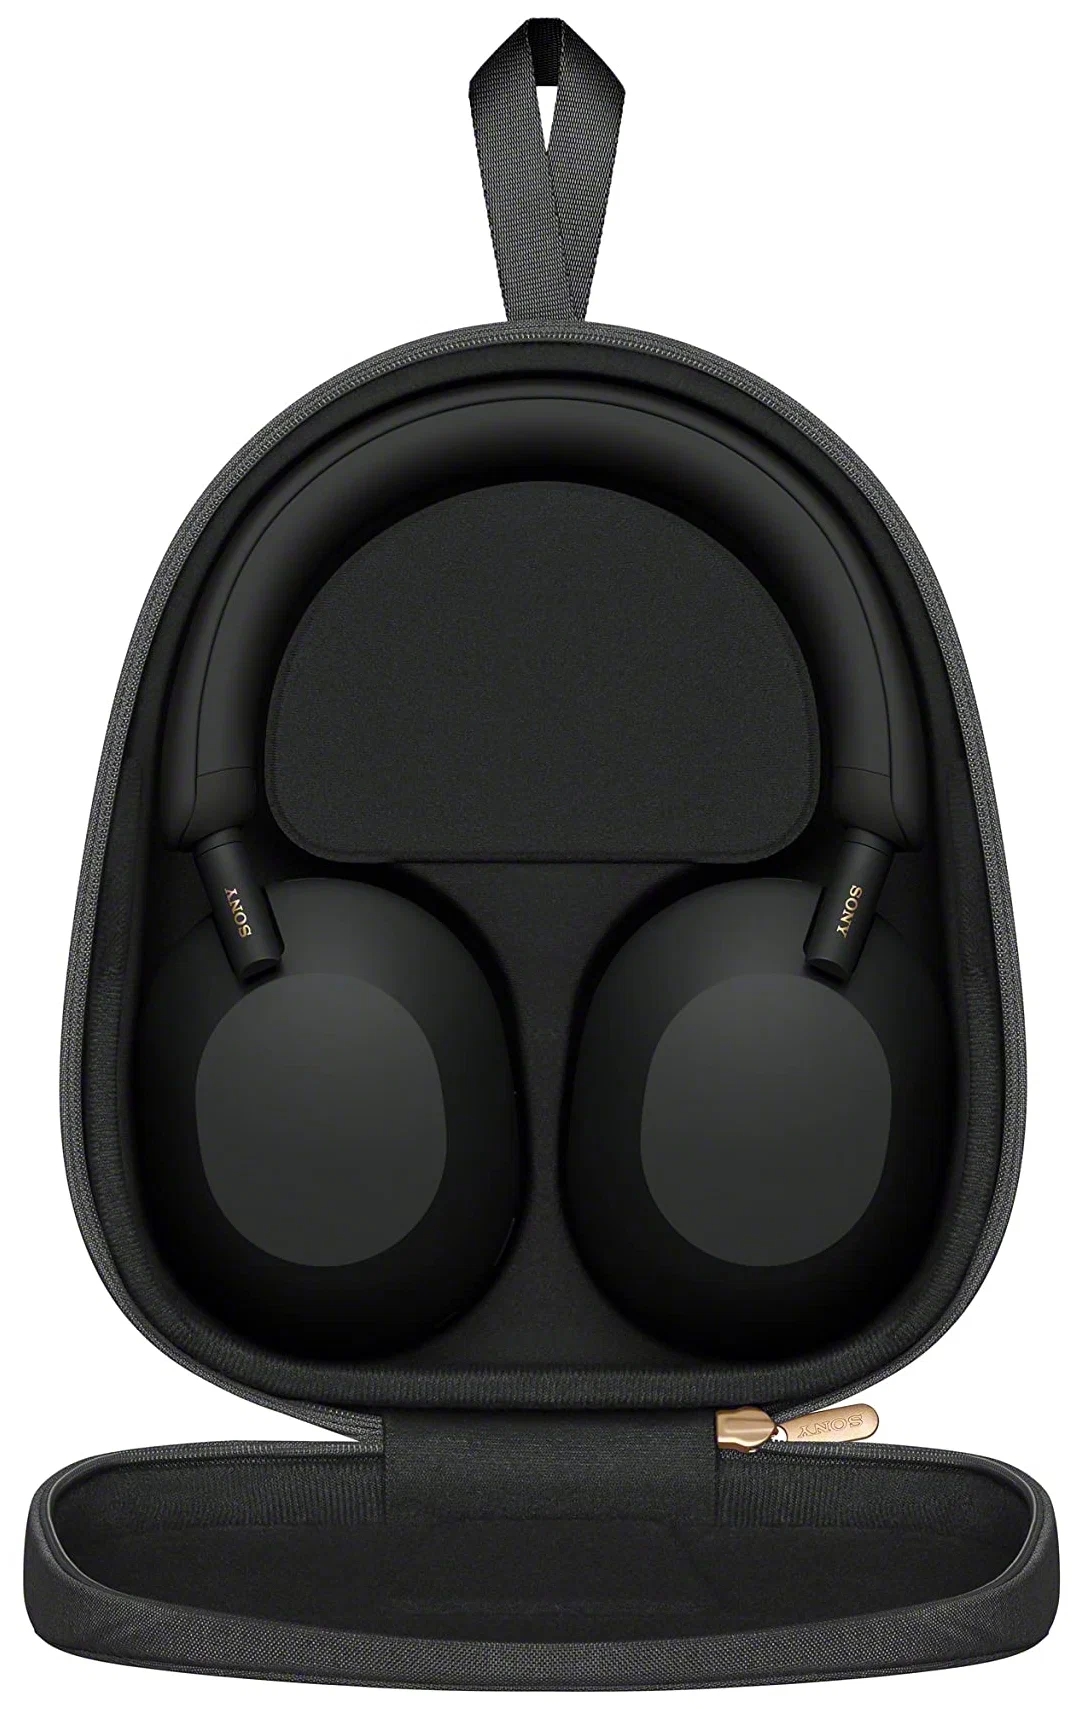 Гарнитура вкладыши Sony WH-1000XM5 черный беспроводные bluetooth в ушной раковине (WH1000XM5/B)